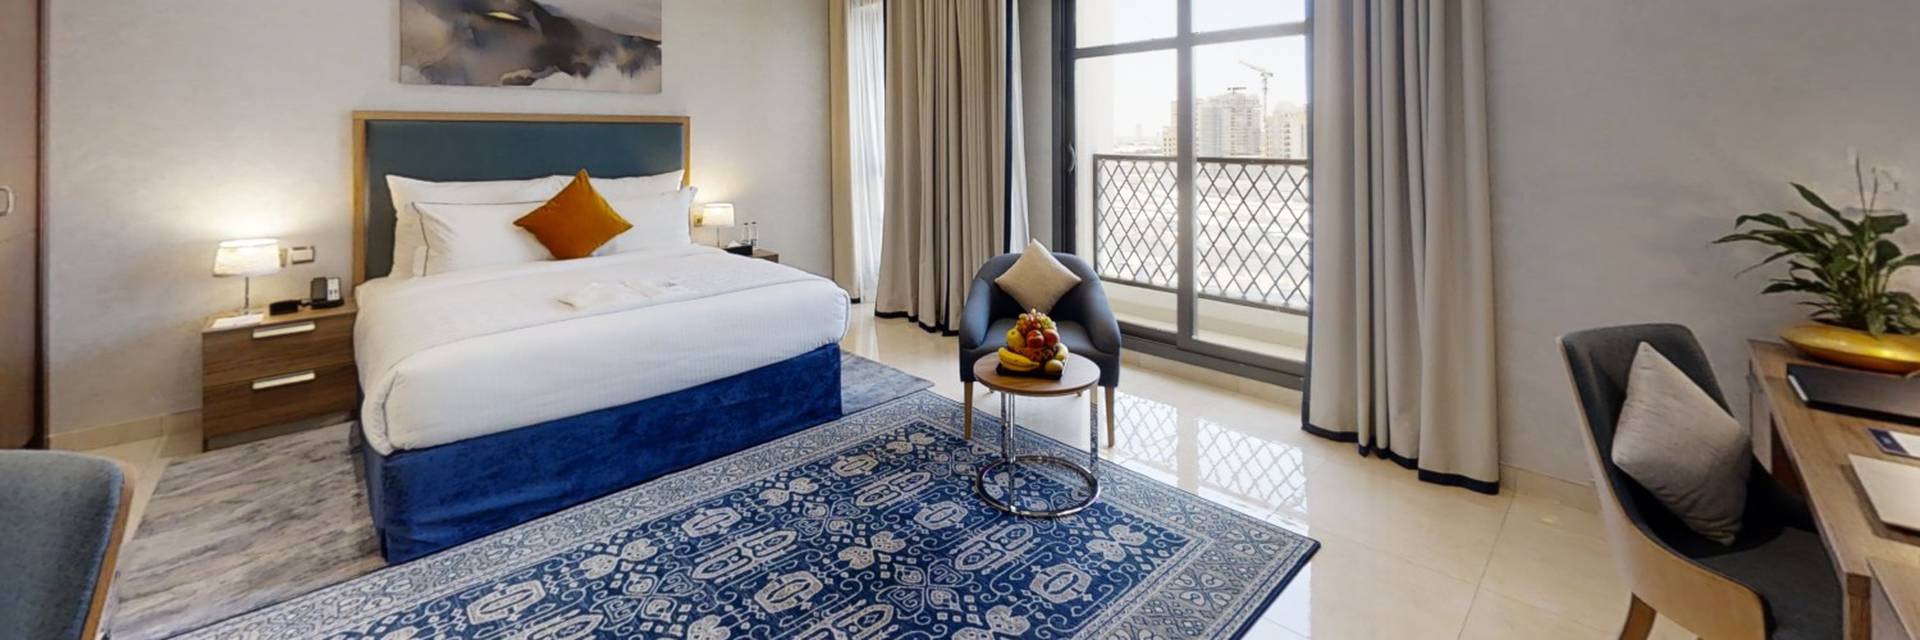 الصور سها بارك الفندقية شقق دبي